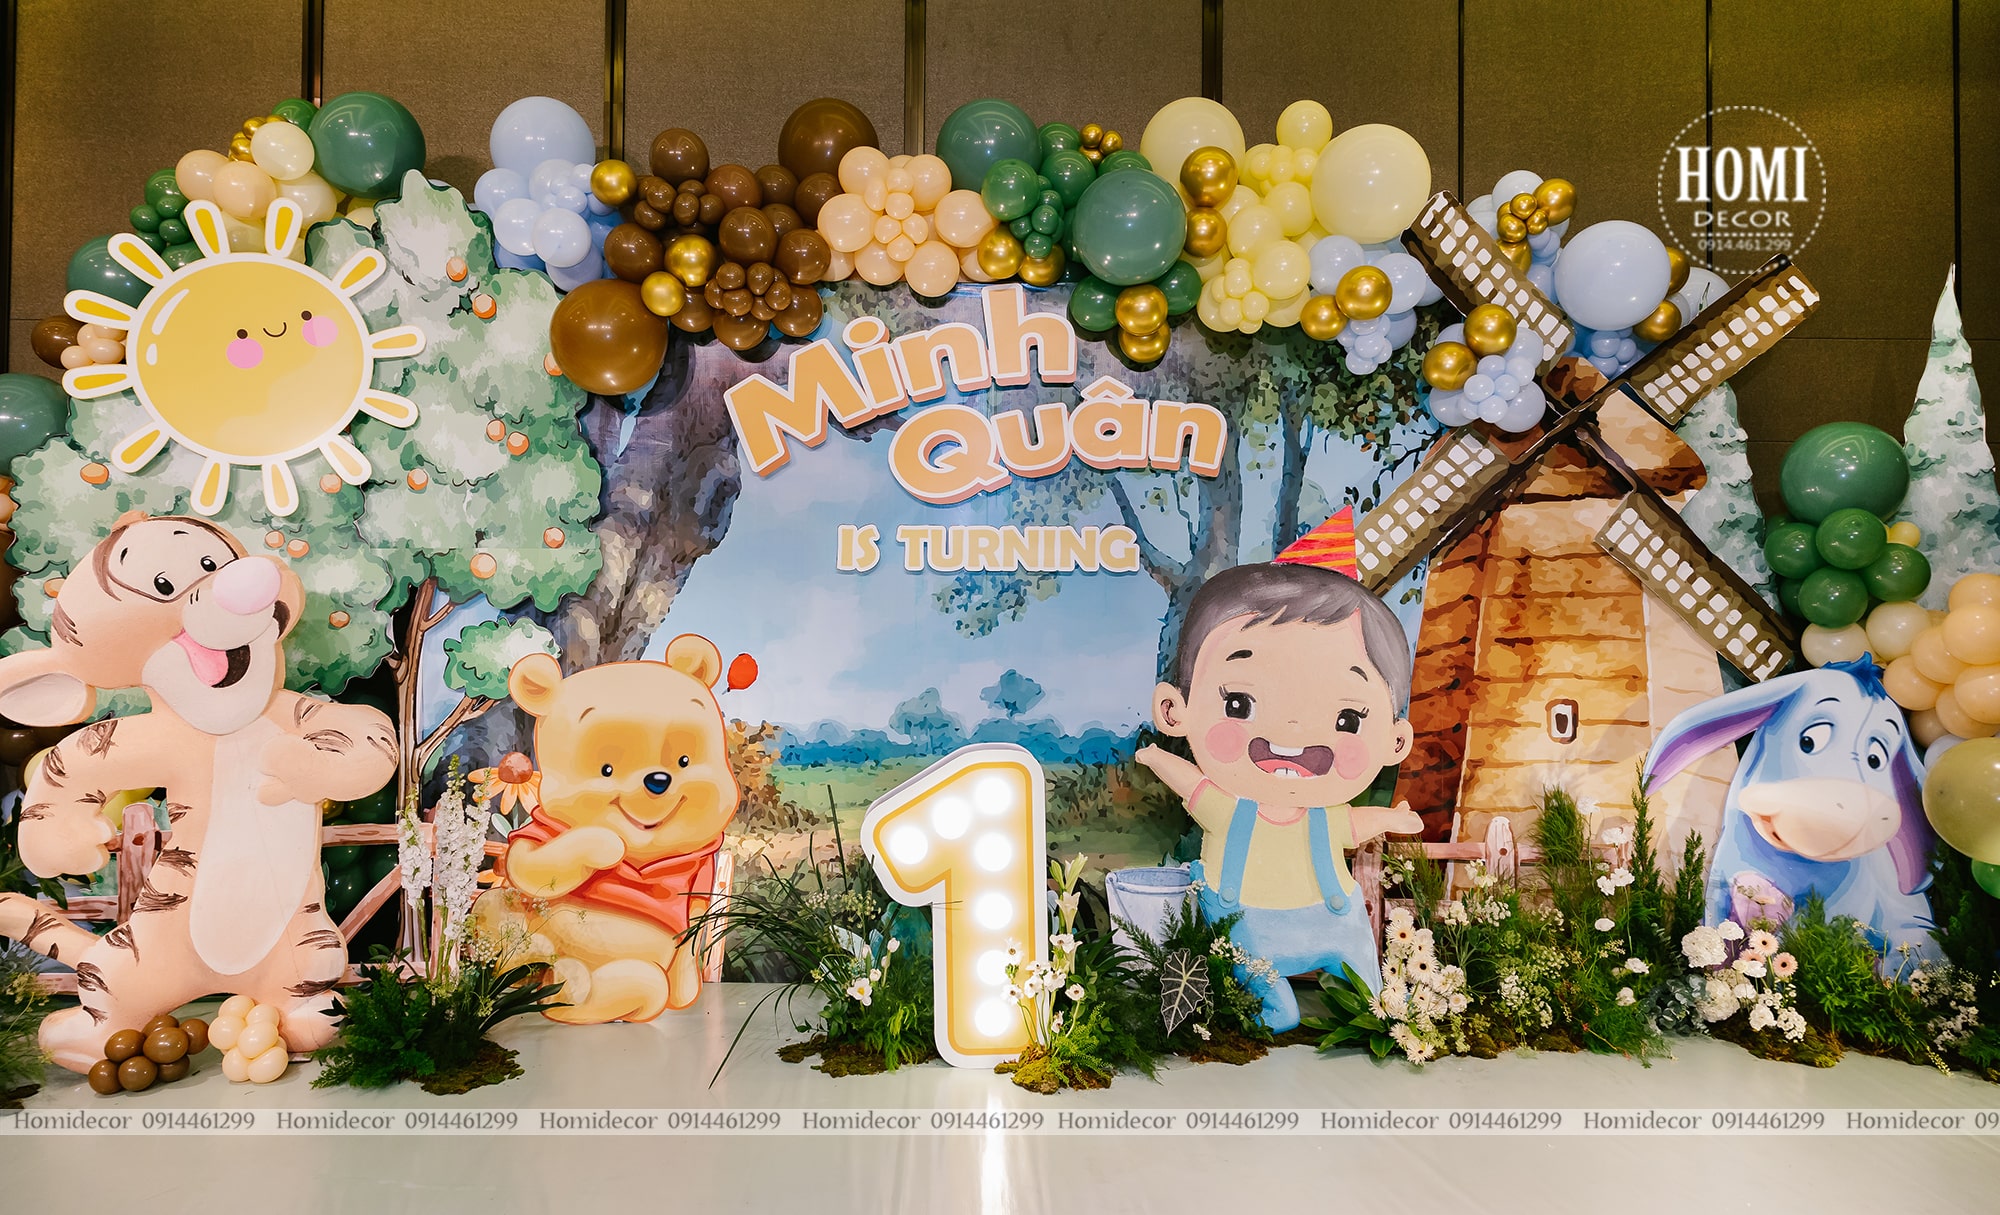 Trang trí sinh nhật bé trai chủ đề Winnie the Pooh tại khách sạn Lotte Legend 